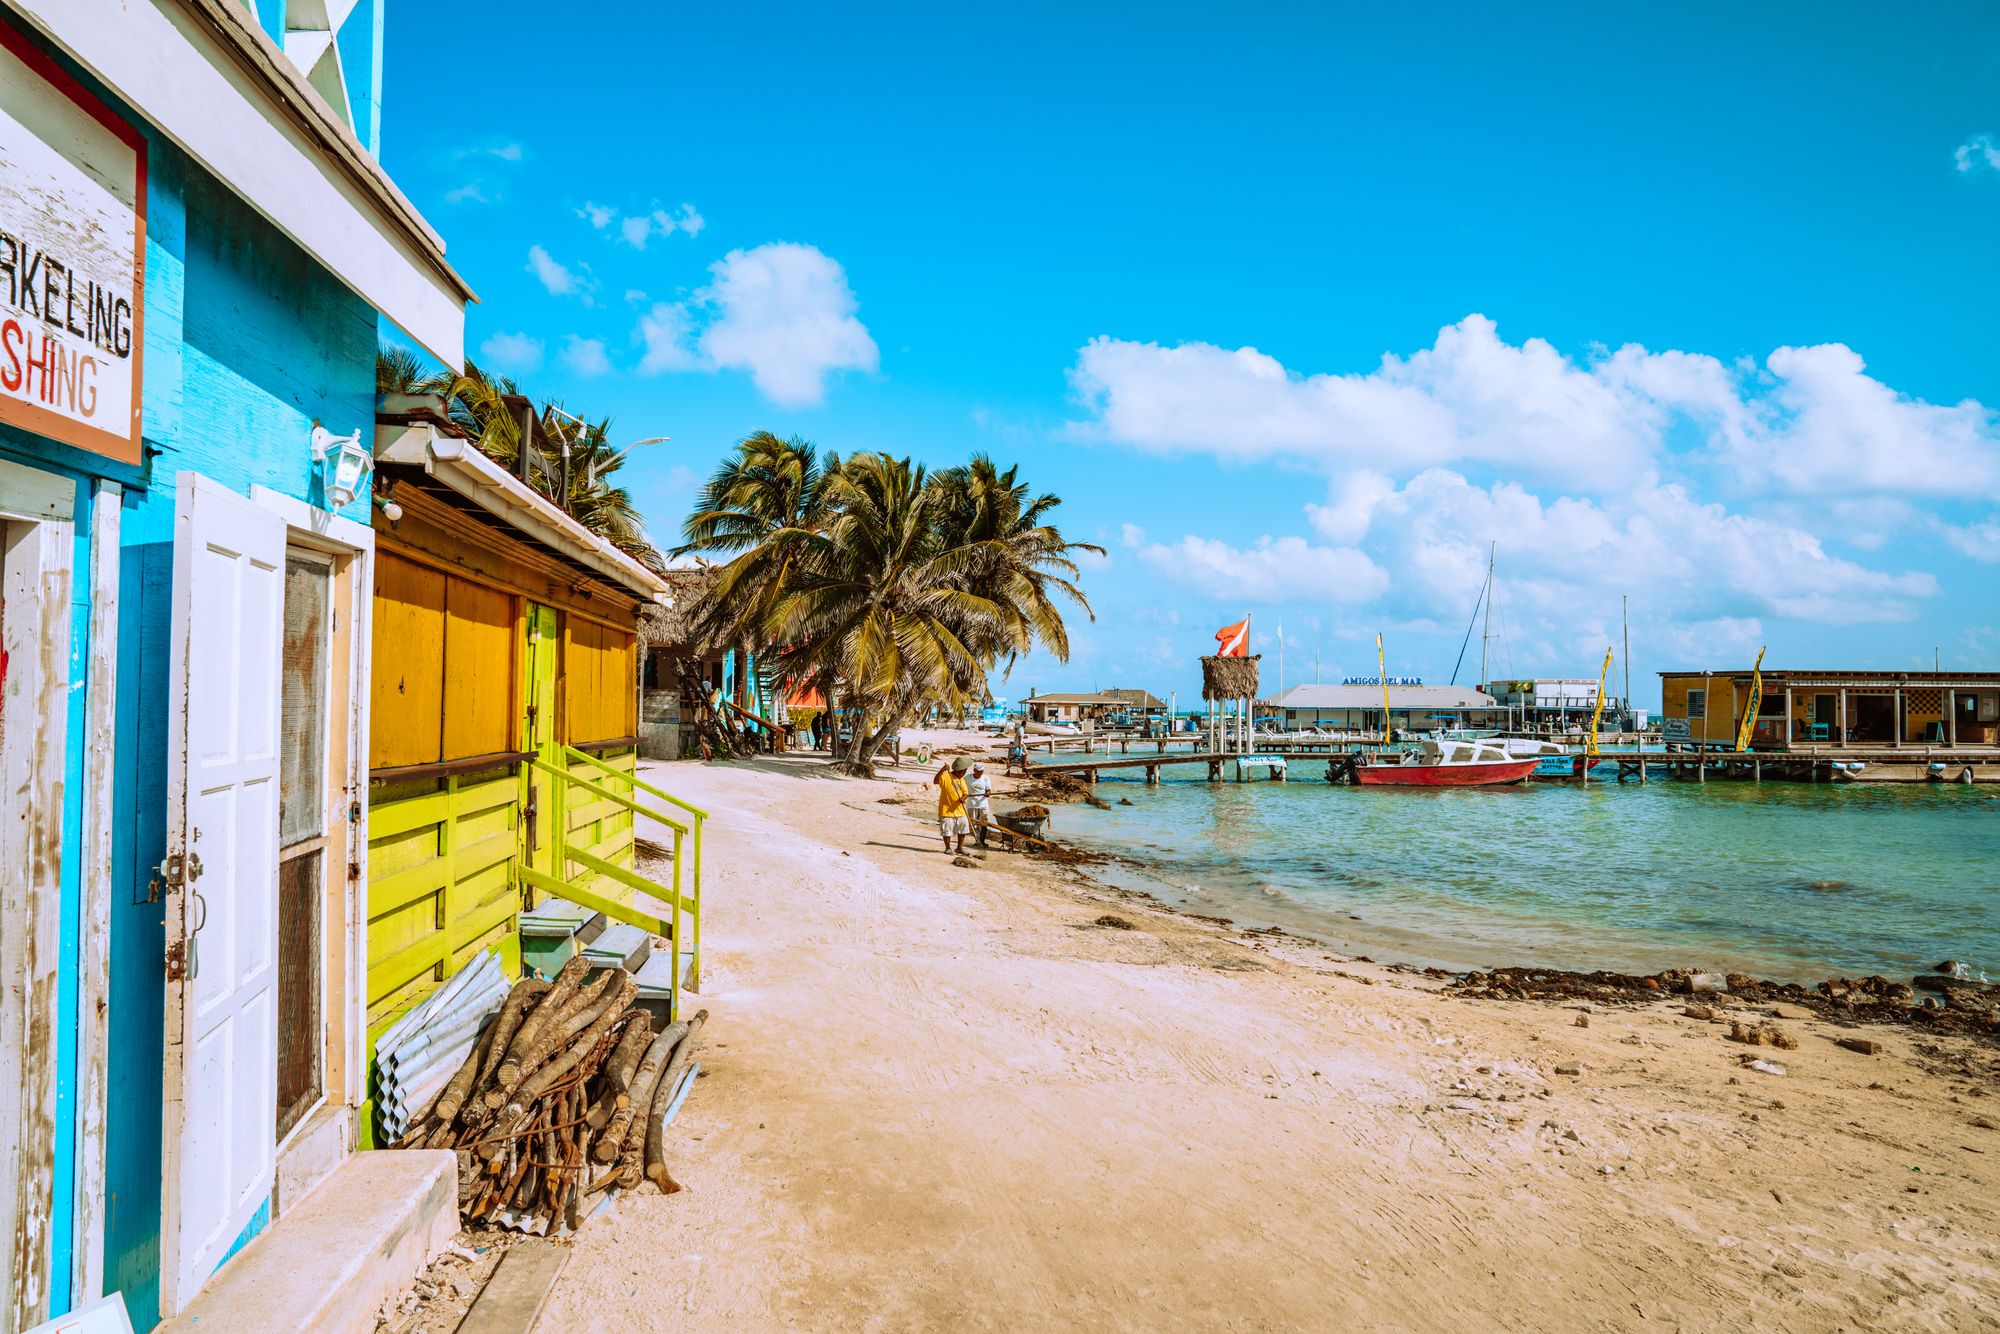 A dock in Belize